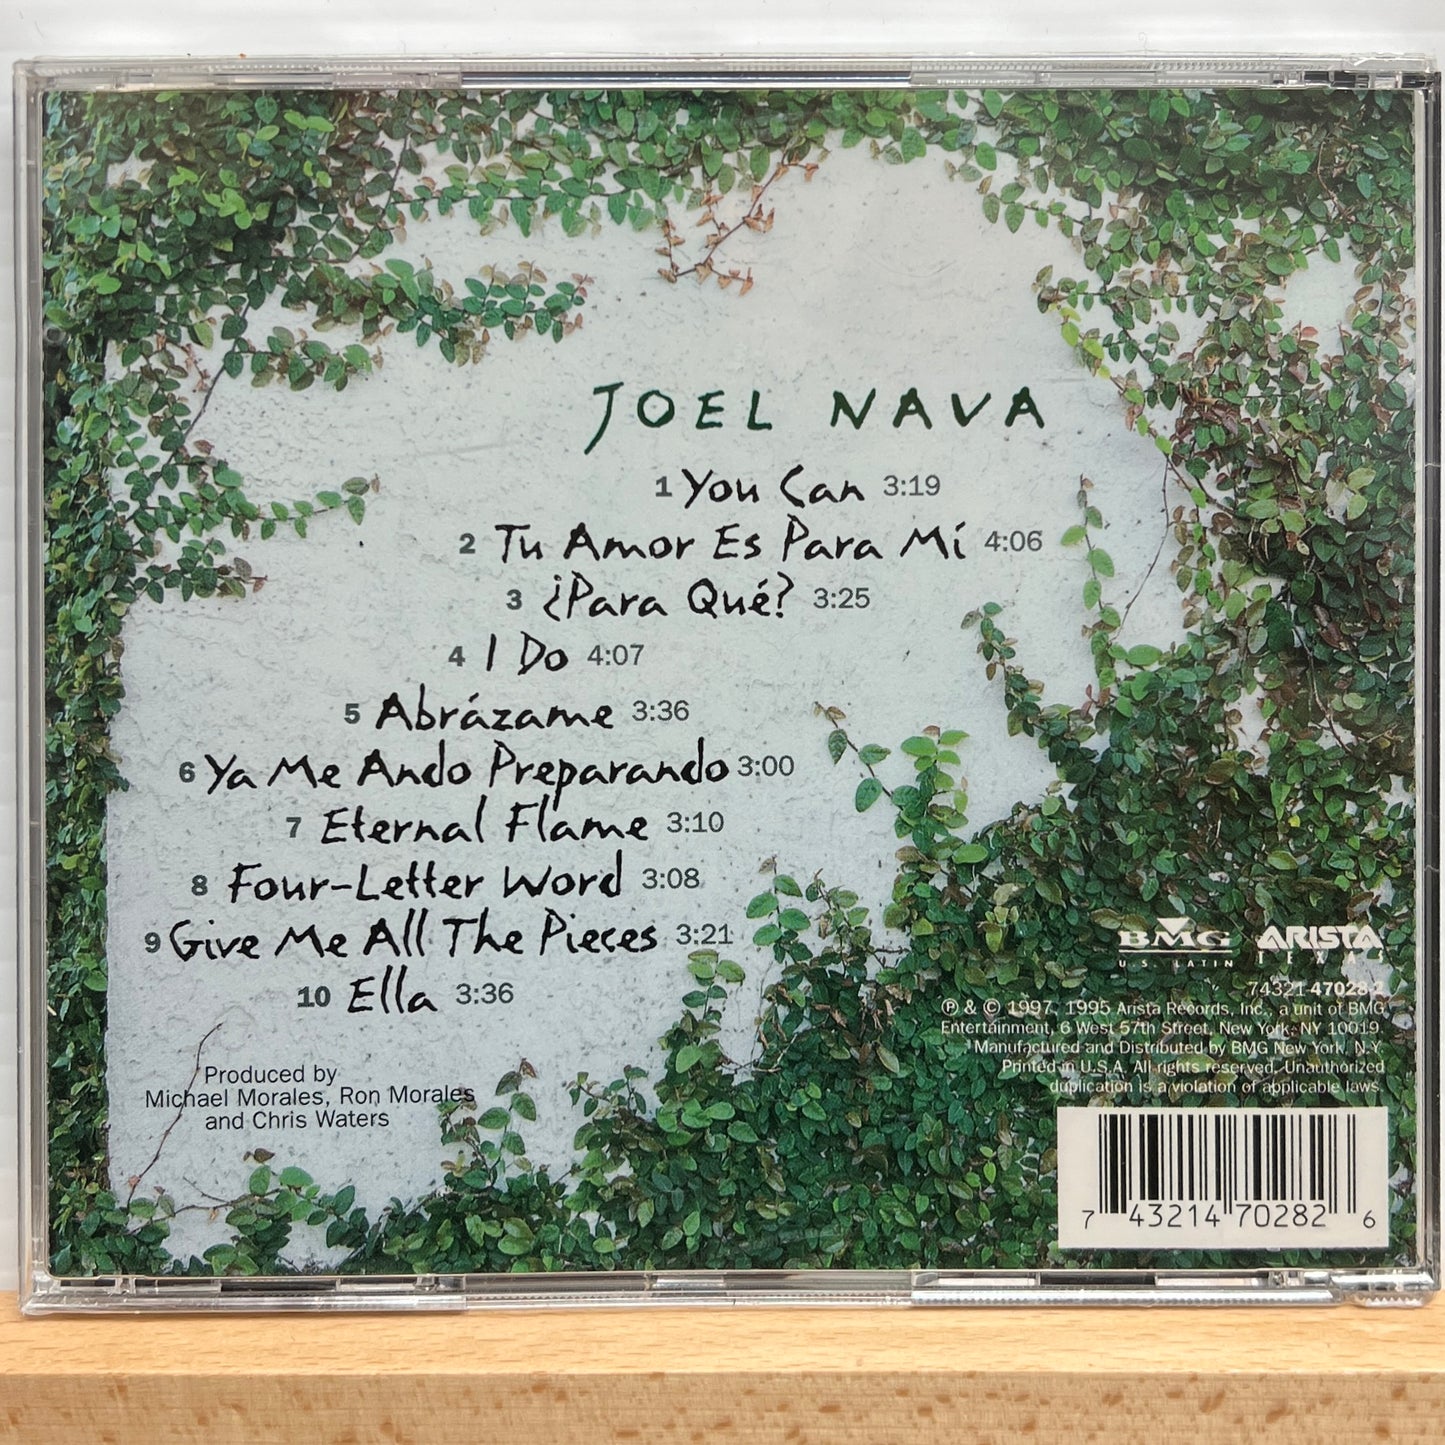 Joel Nava - Joe Nava (CD)